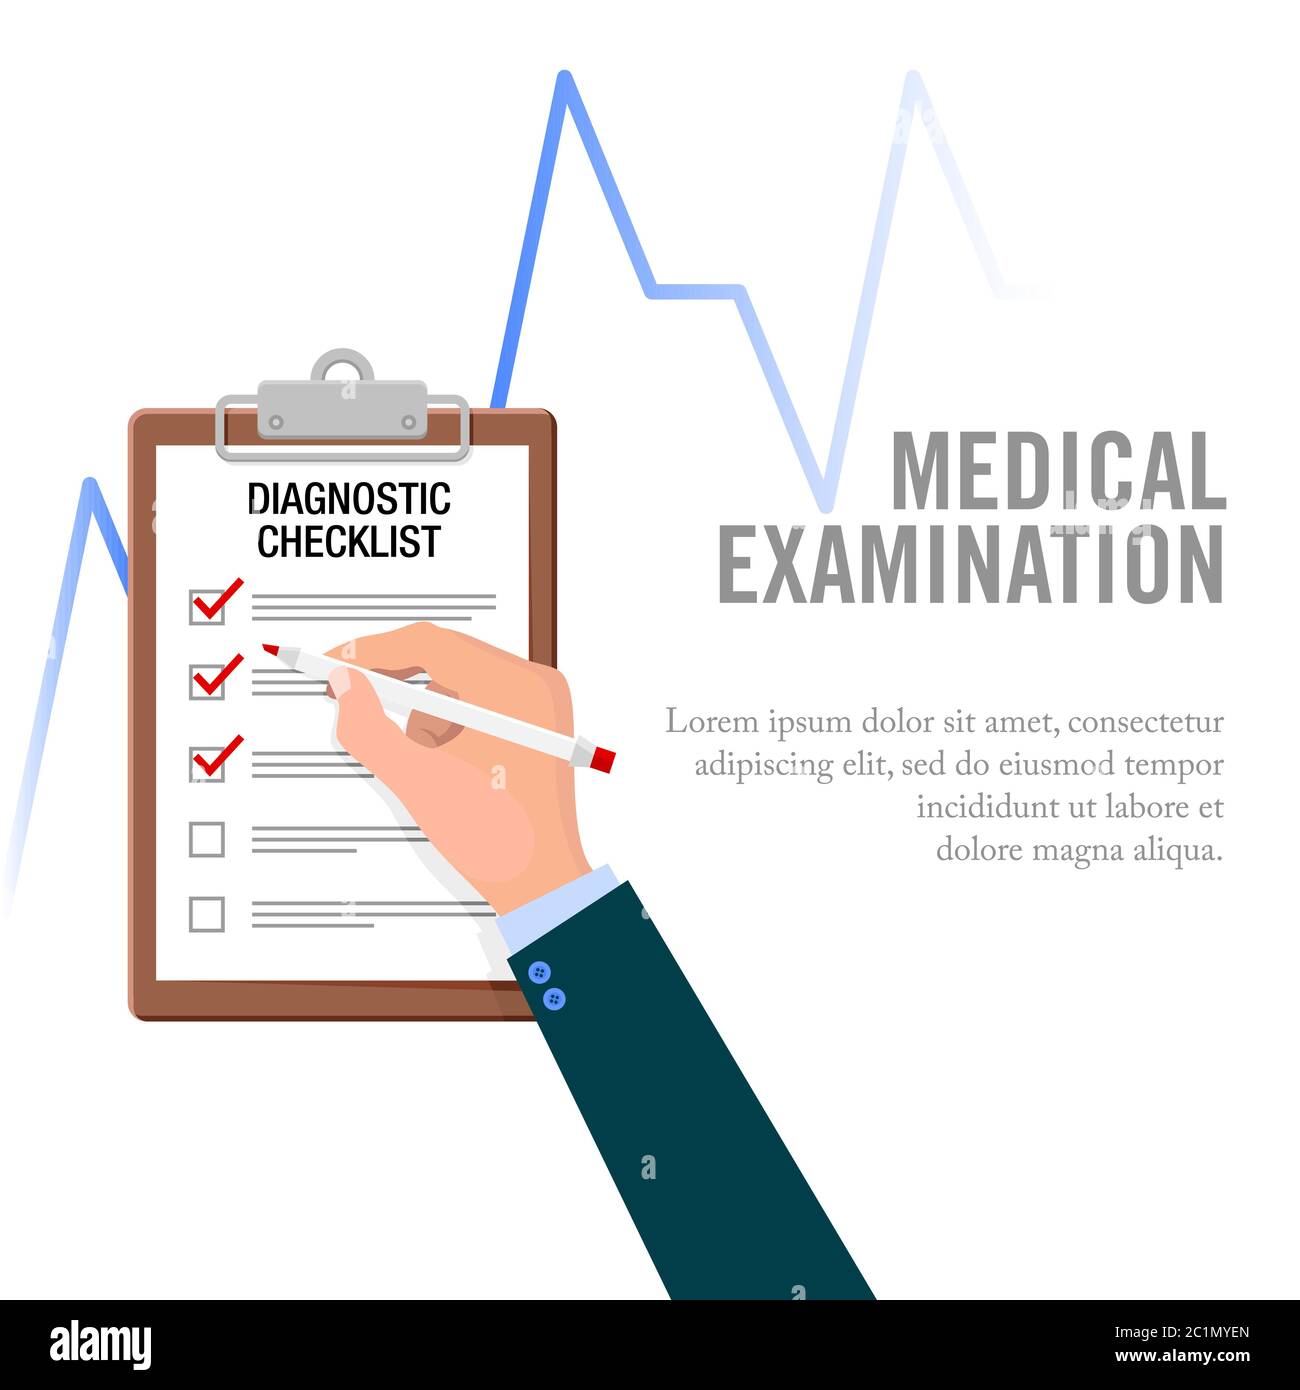 Vektor-Illustration der Gesundheits-Checkliste Inspektionsaktivitäten. Geeignet für Designvorlagen für Gesundheitstests, Krankheitssymptome und Gesundheitsanforderungen Stock Vektor